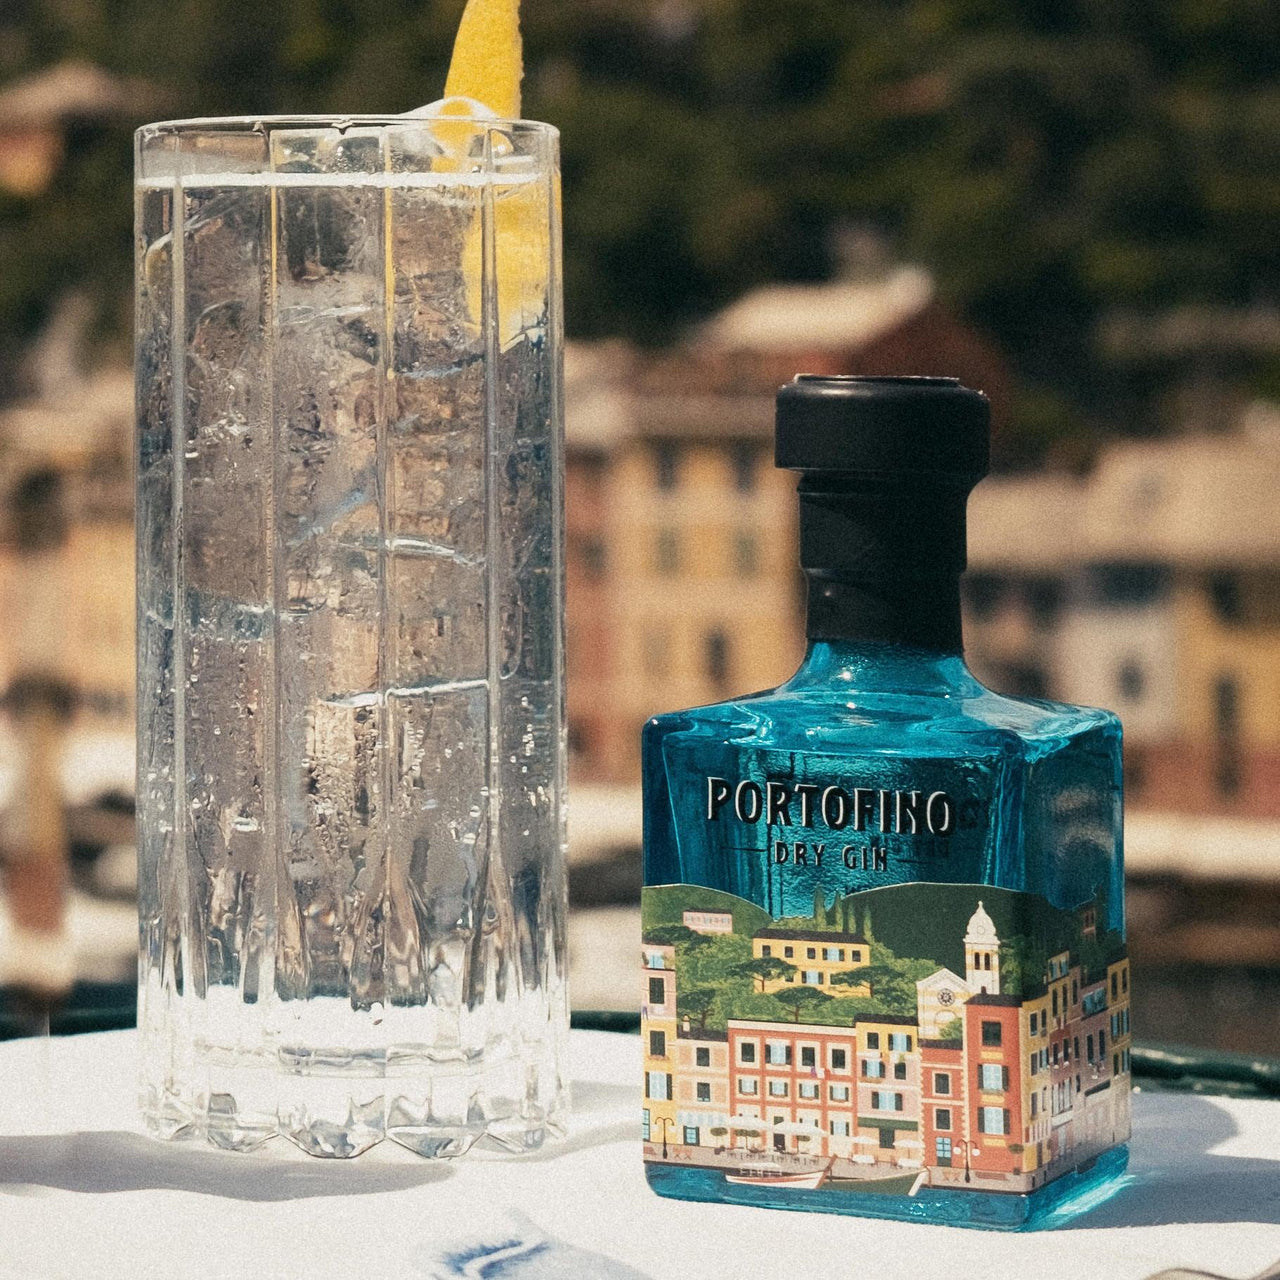 PORTOFINO DRY GIN PANORAMA BUNDLE - 100 ML – Portofino Dry Gin